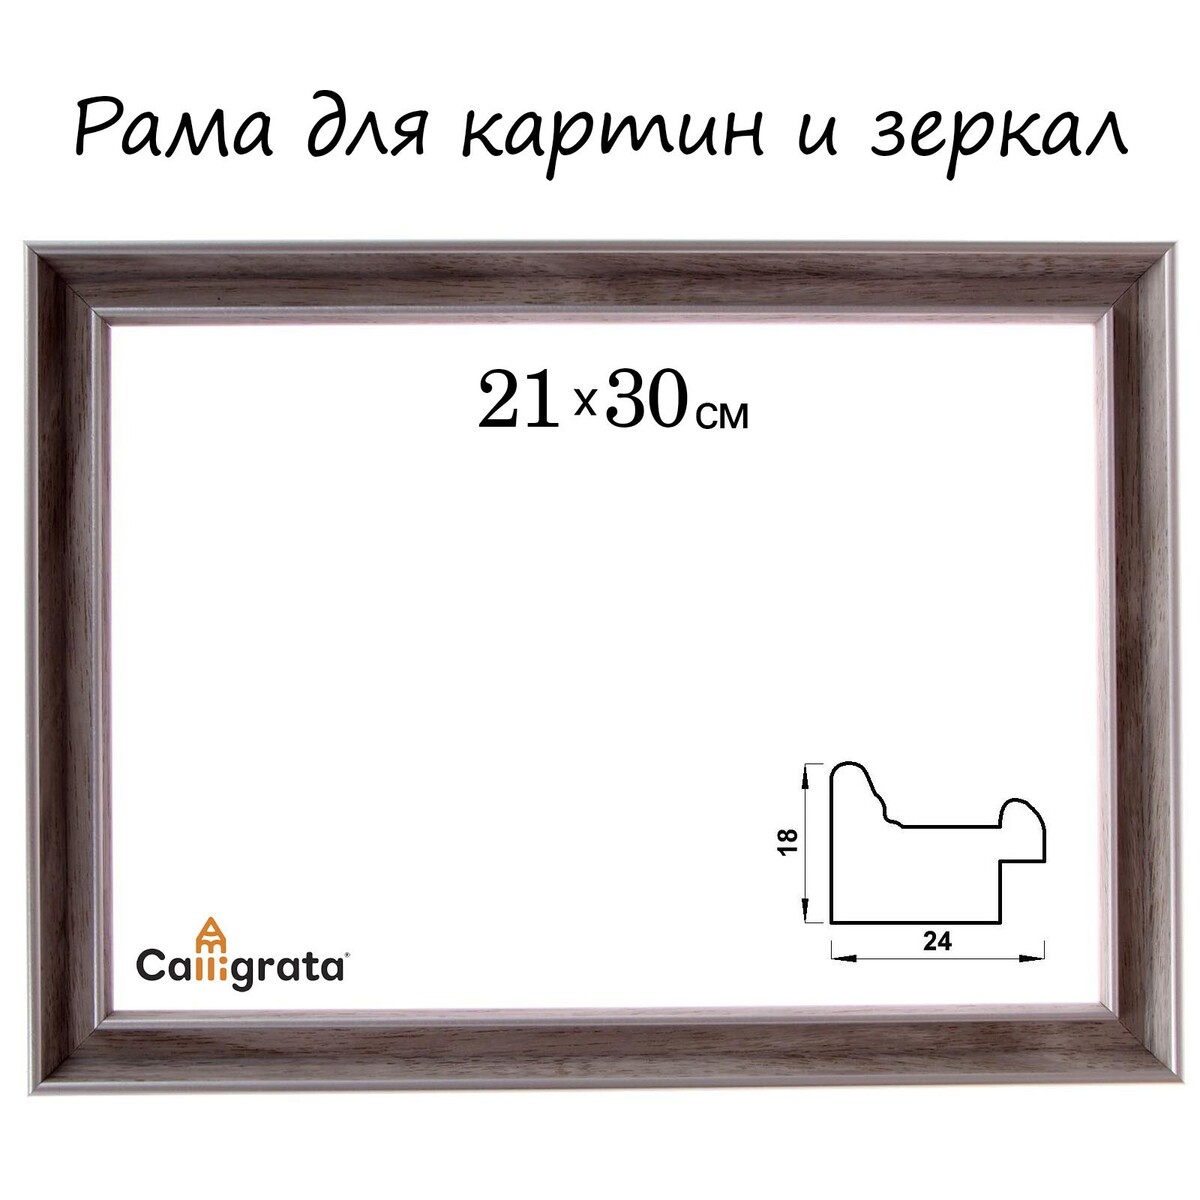 Рама для картин (зеркал) 21 х 30 х 2,4 см, пластиковая, calligrata 6424, бежевая